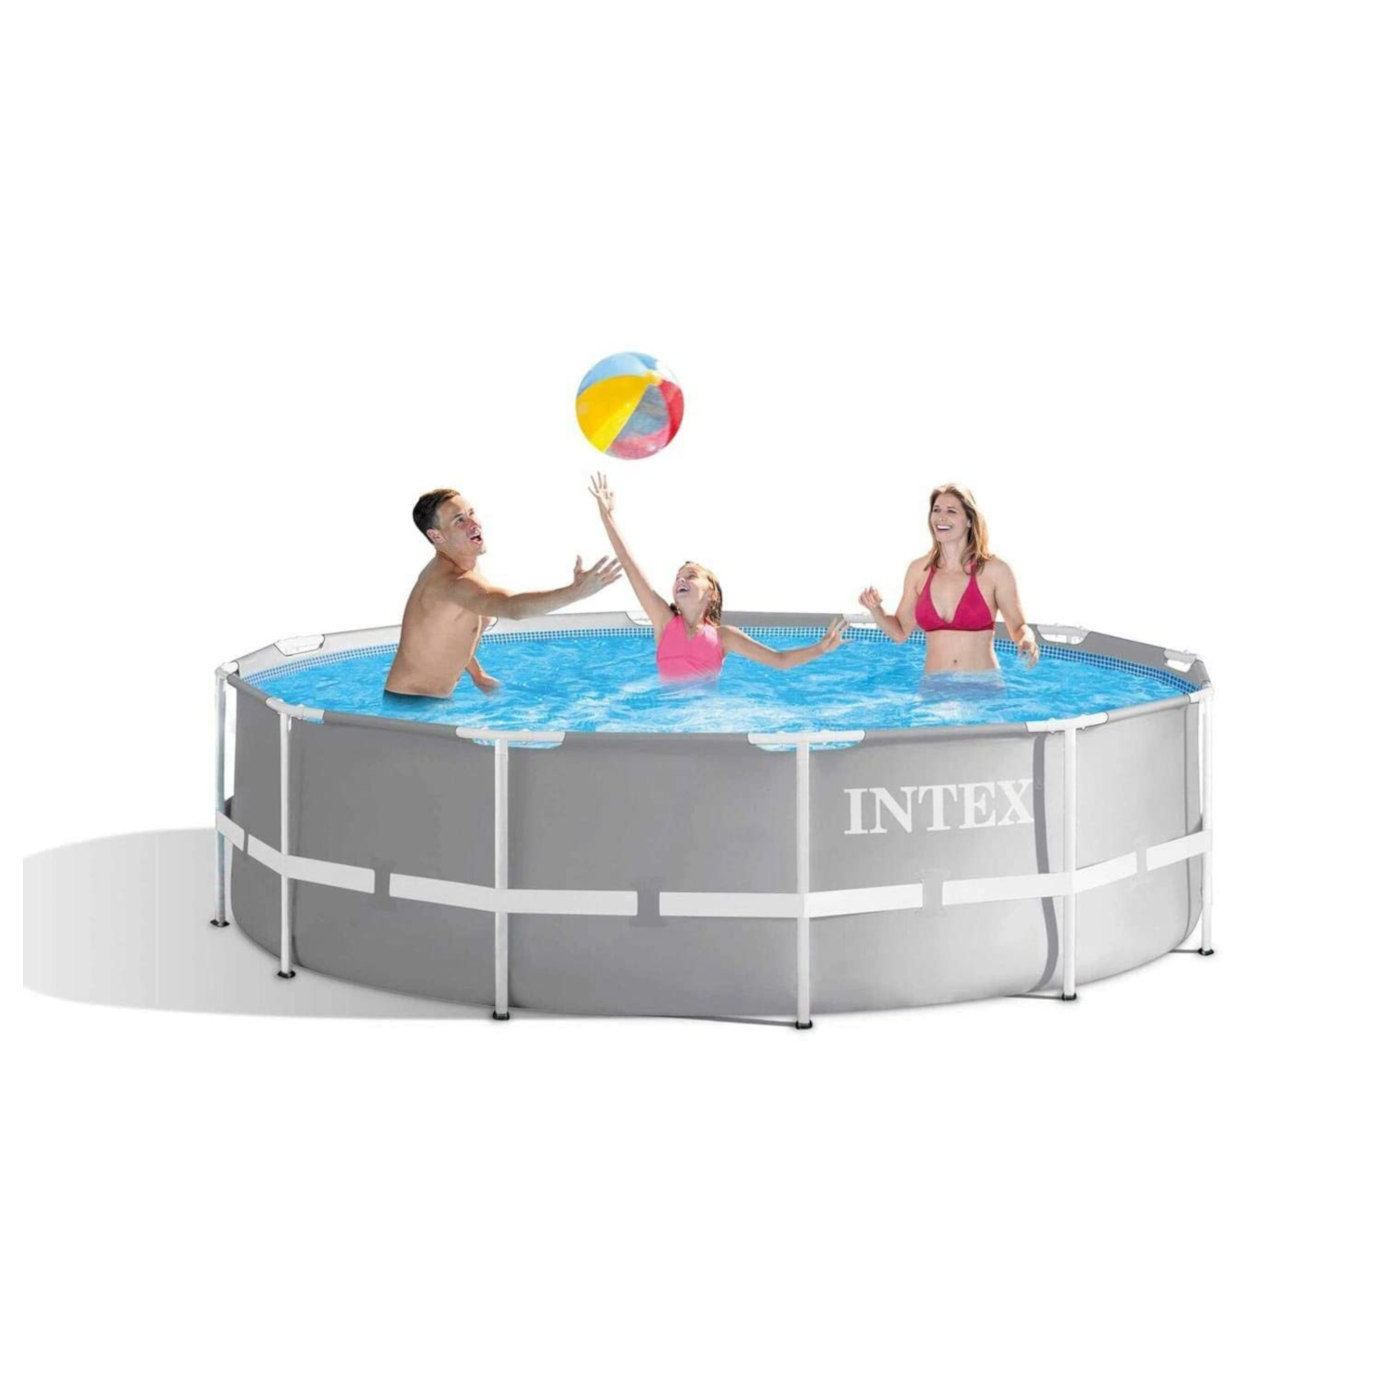 Pool Frame + INTEX umfangreiches 366x99cm Filterpumpe Swimmingpool, inkl. Zubehör Prism und grau Leiter